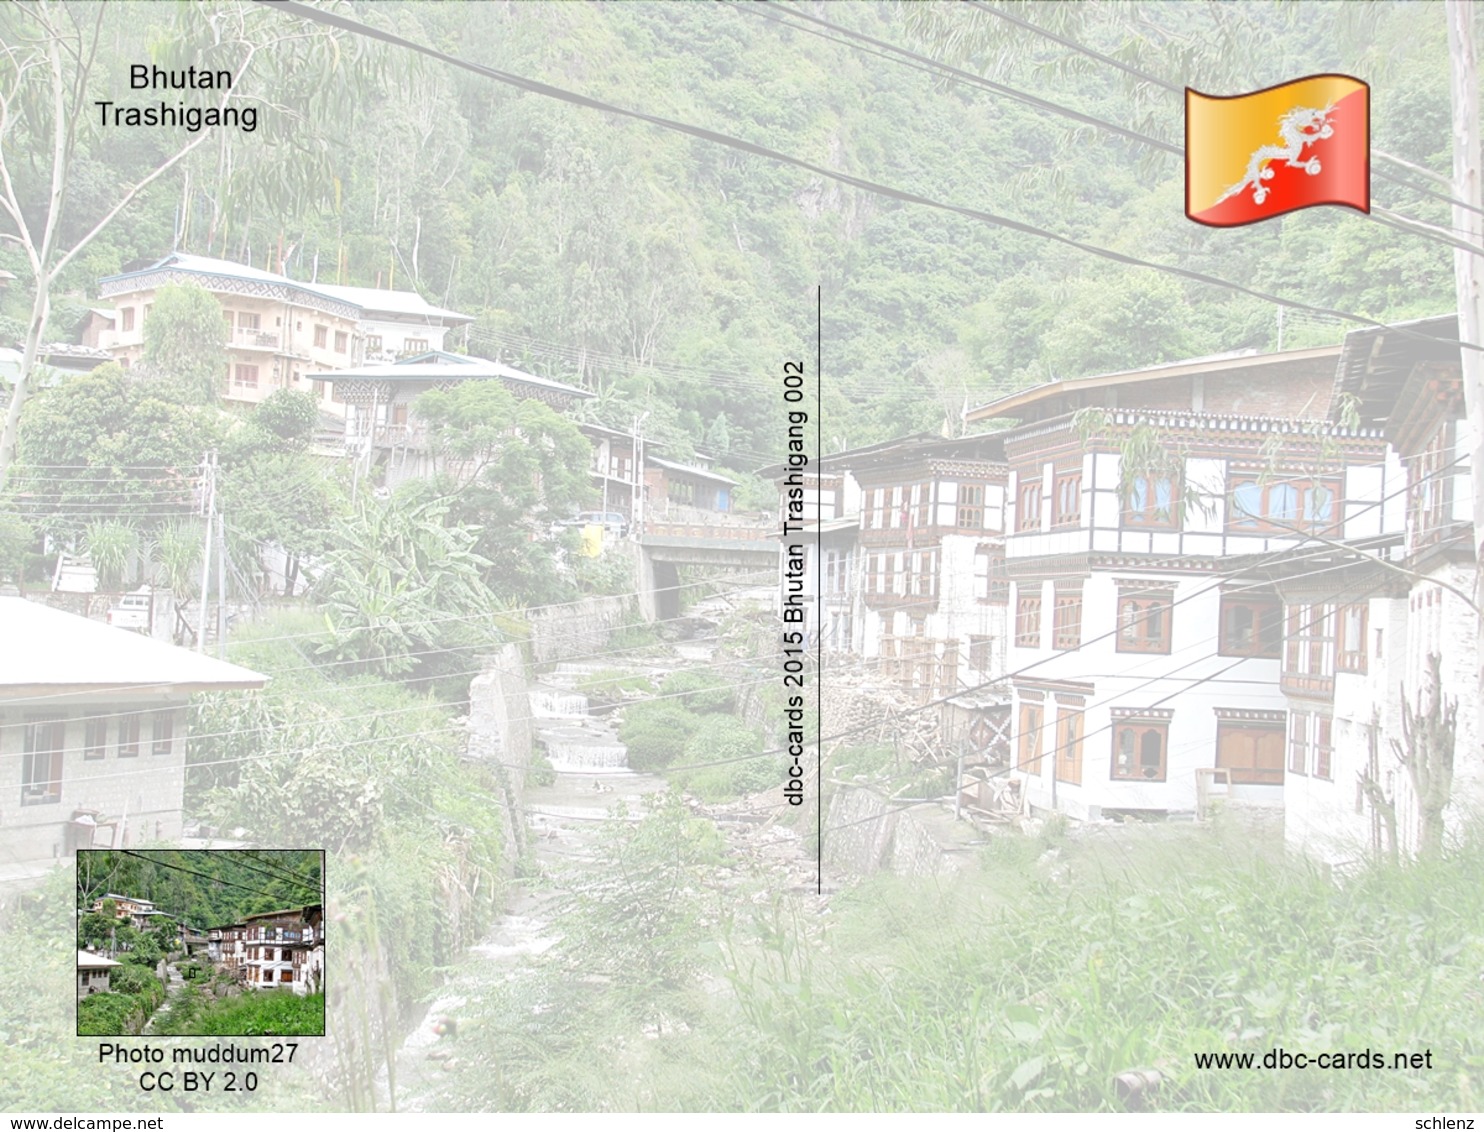 Trashigang Bhutan - Bhoutan